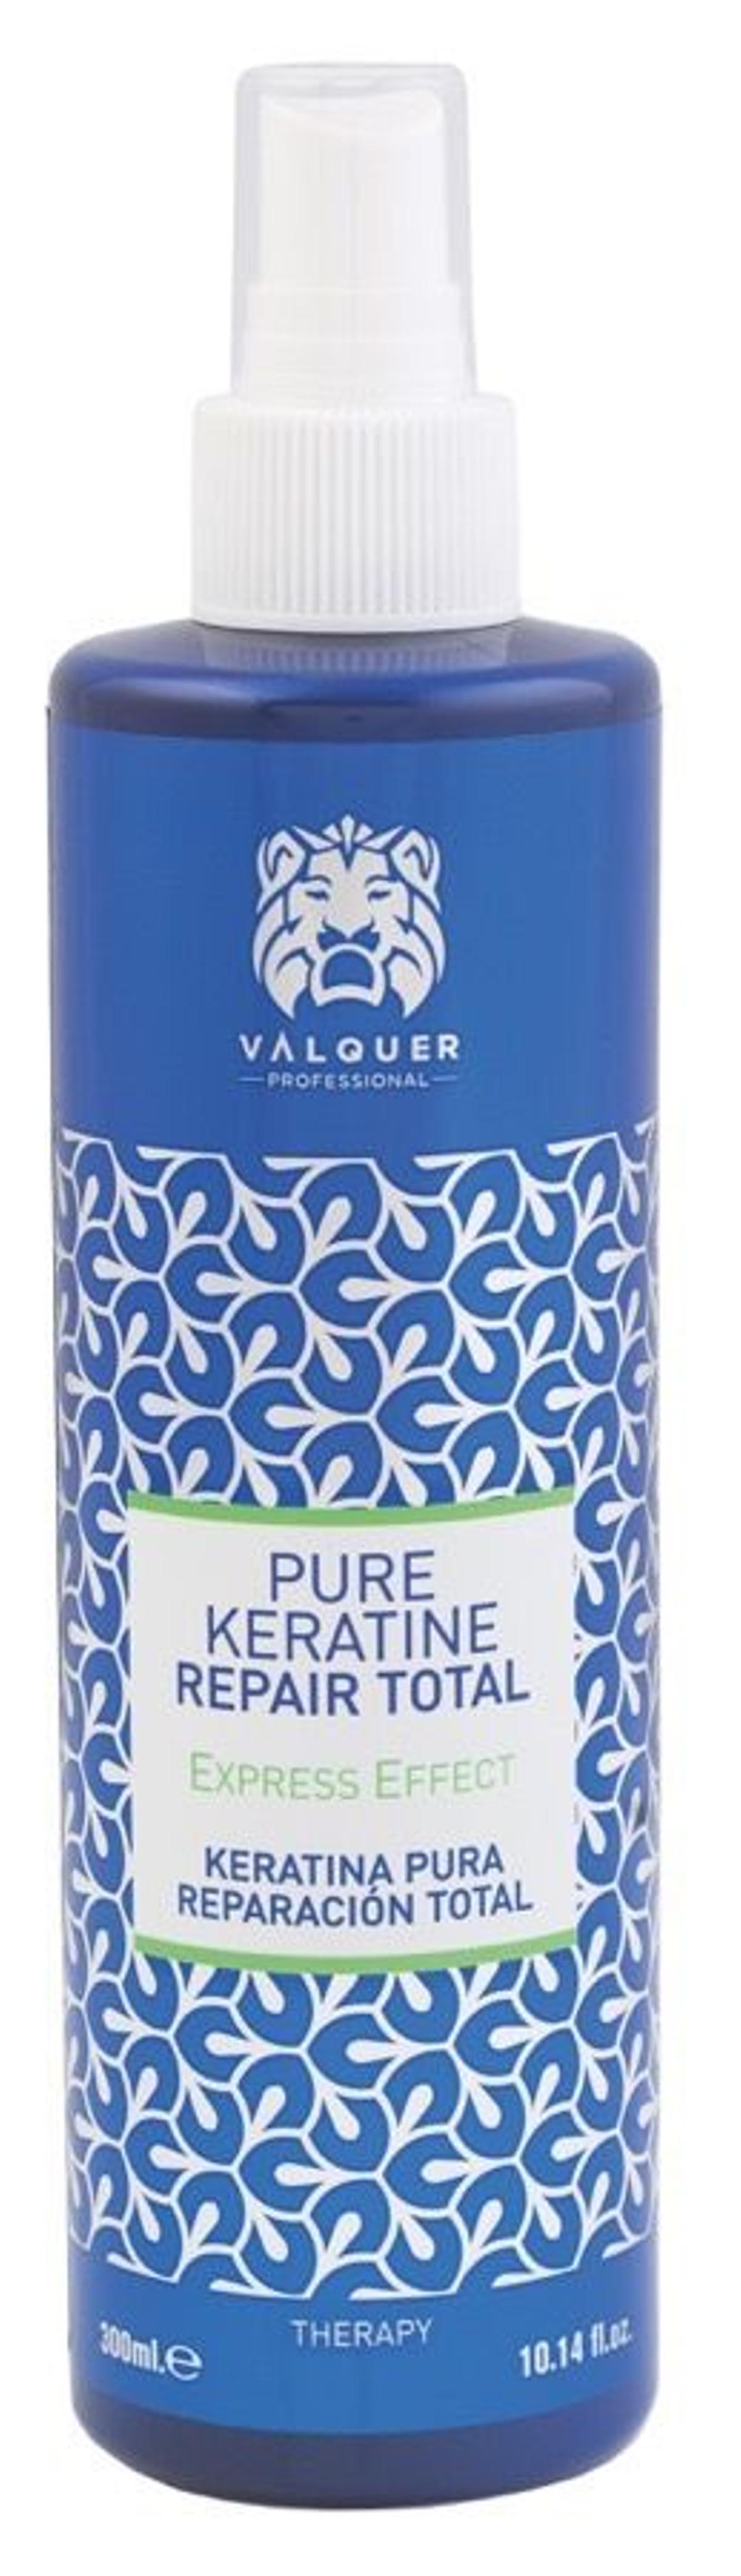 Testura sin calor, Pure Keratine Serum Repair Total, Valker